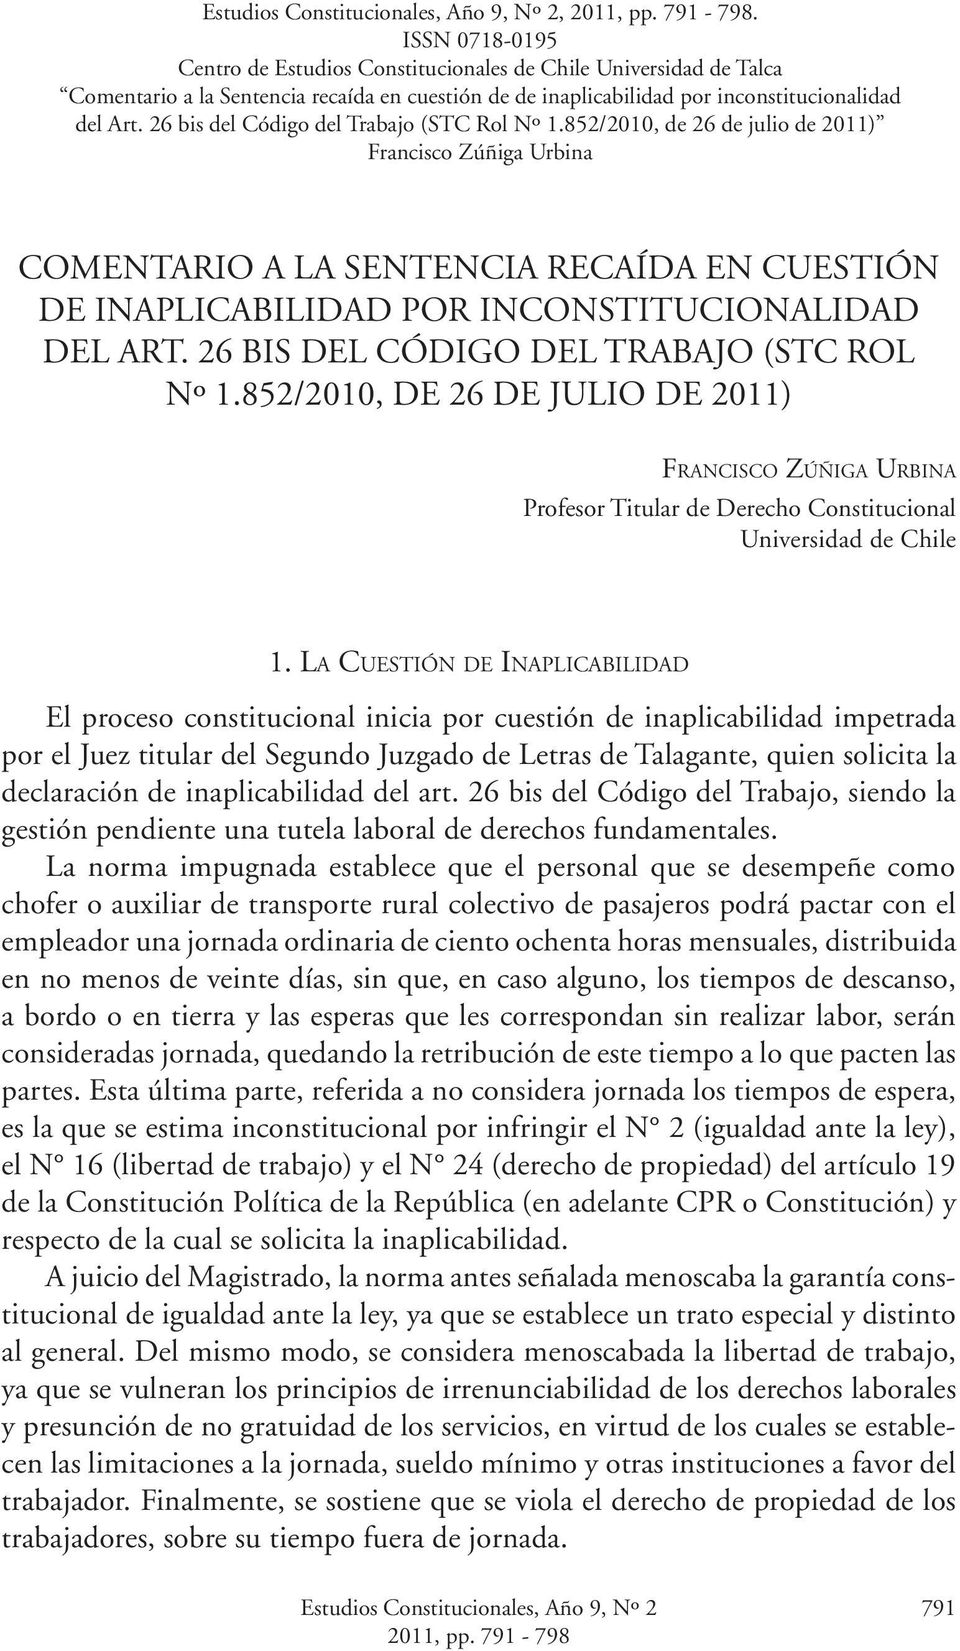 26 bis del Código del Trabajo (STC Rol Nº 1.852/2010, de 26 de julio de 2011) Francisco Zúñiga Urbina Comentario a la Sentencia recaída en cuestión de inaplicabilidad por inconstitucionalidad del Art.